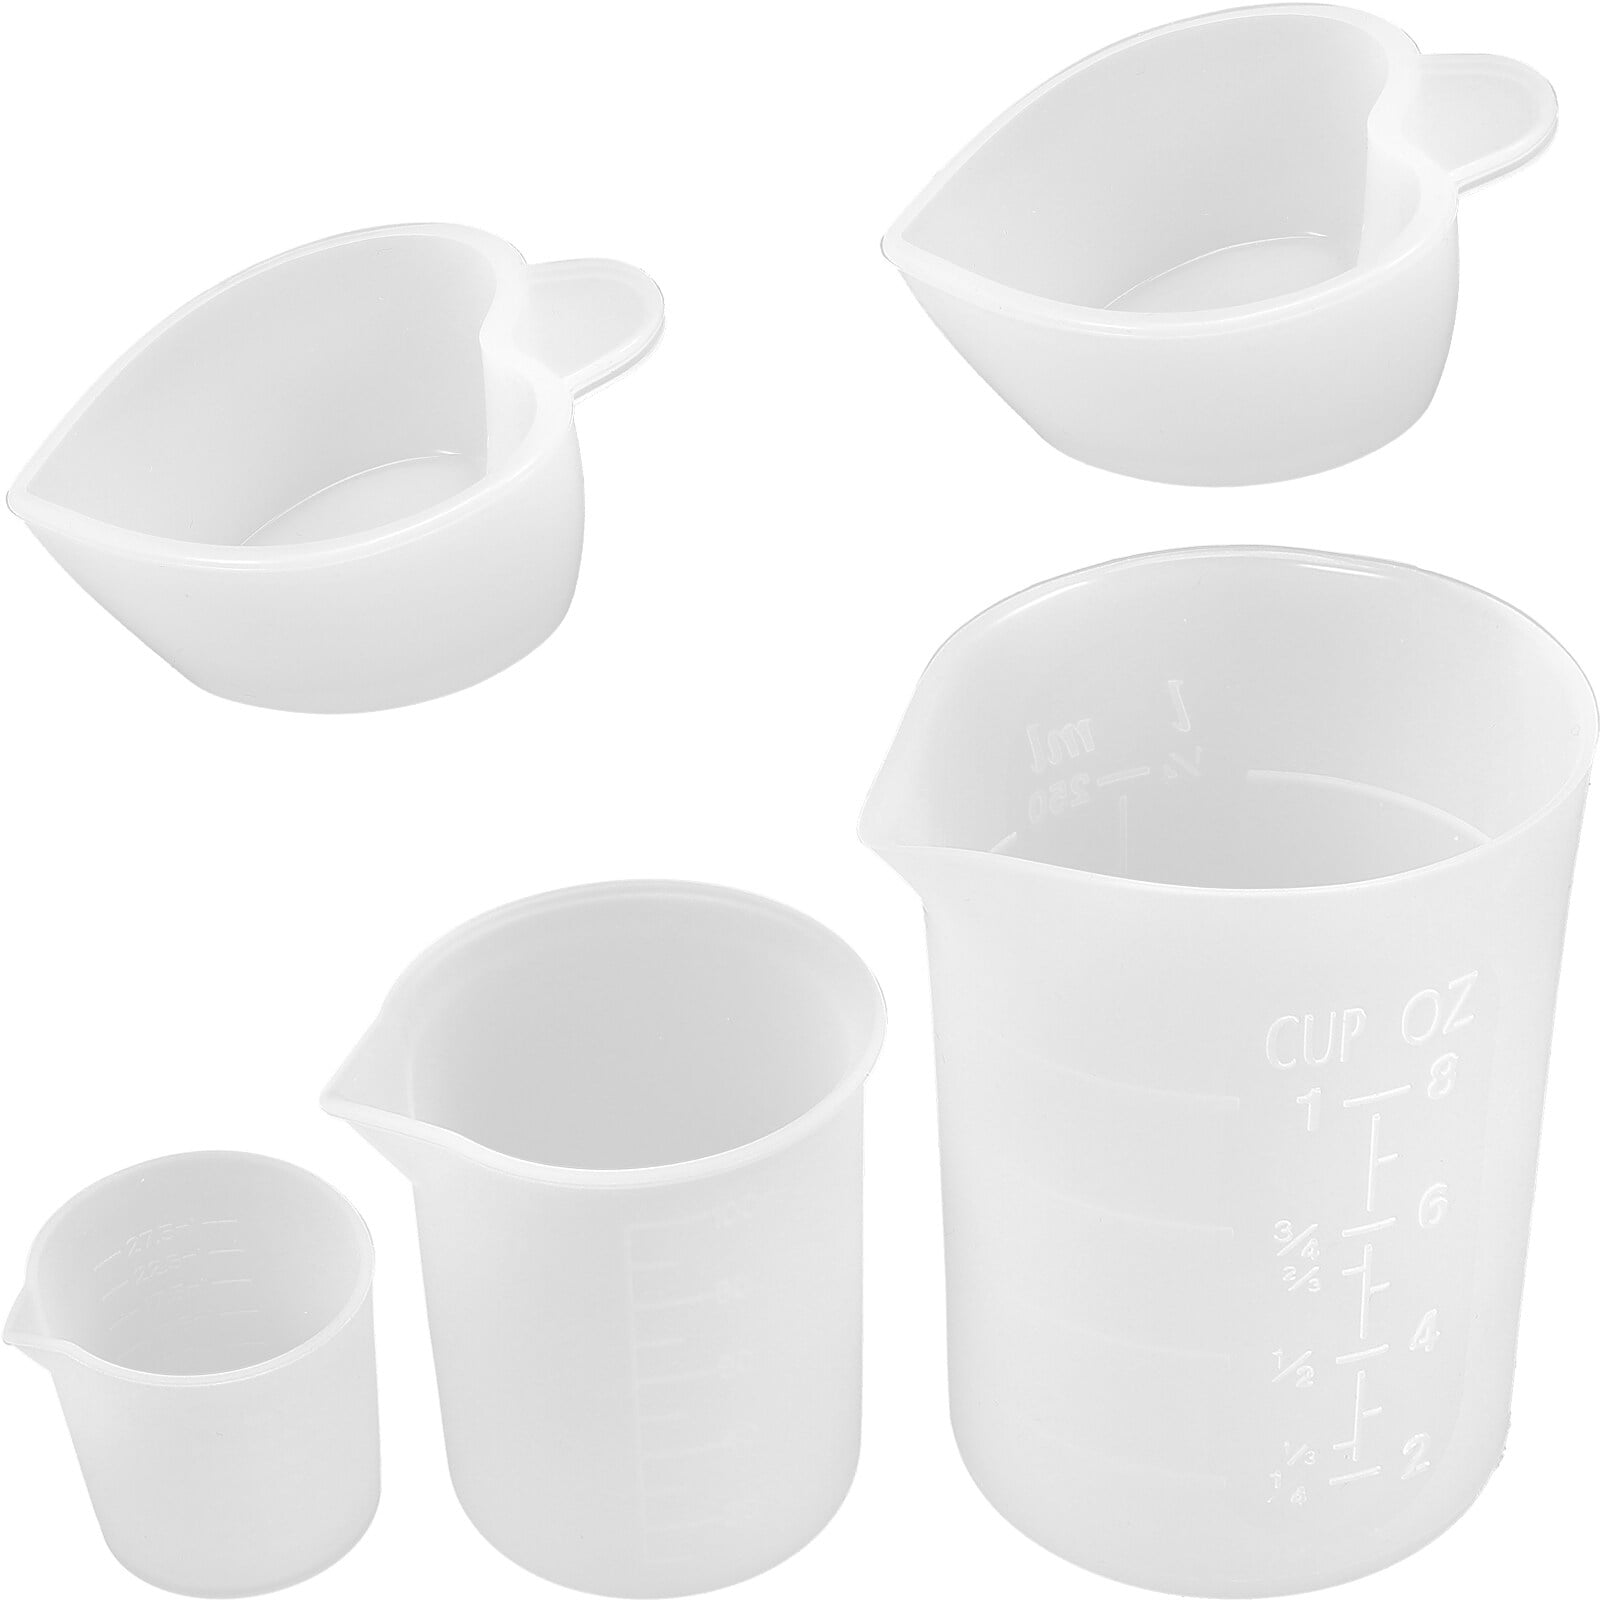 1-5pcs Plastic Graduated Measuring Cup Liquid Container Epoxy